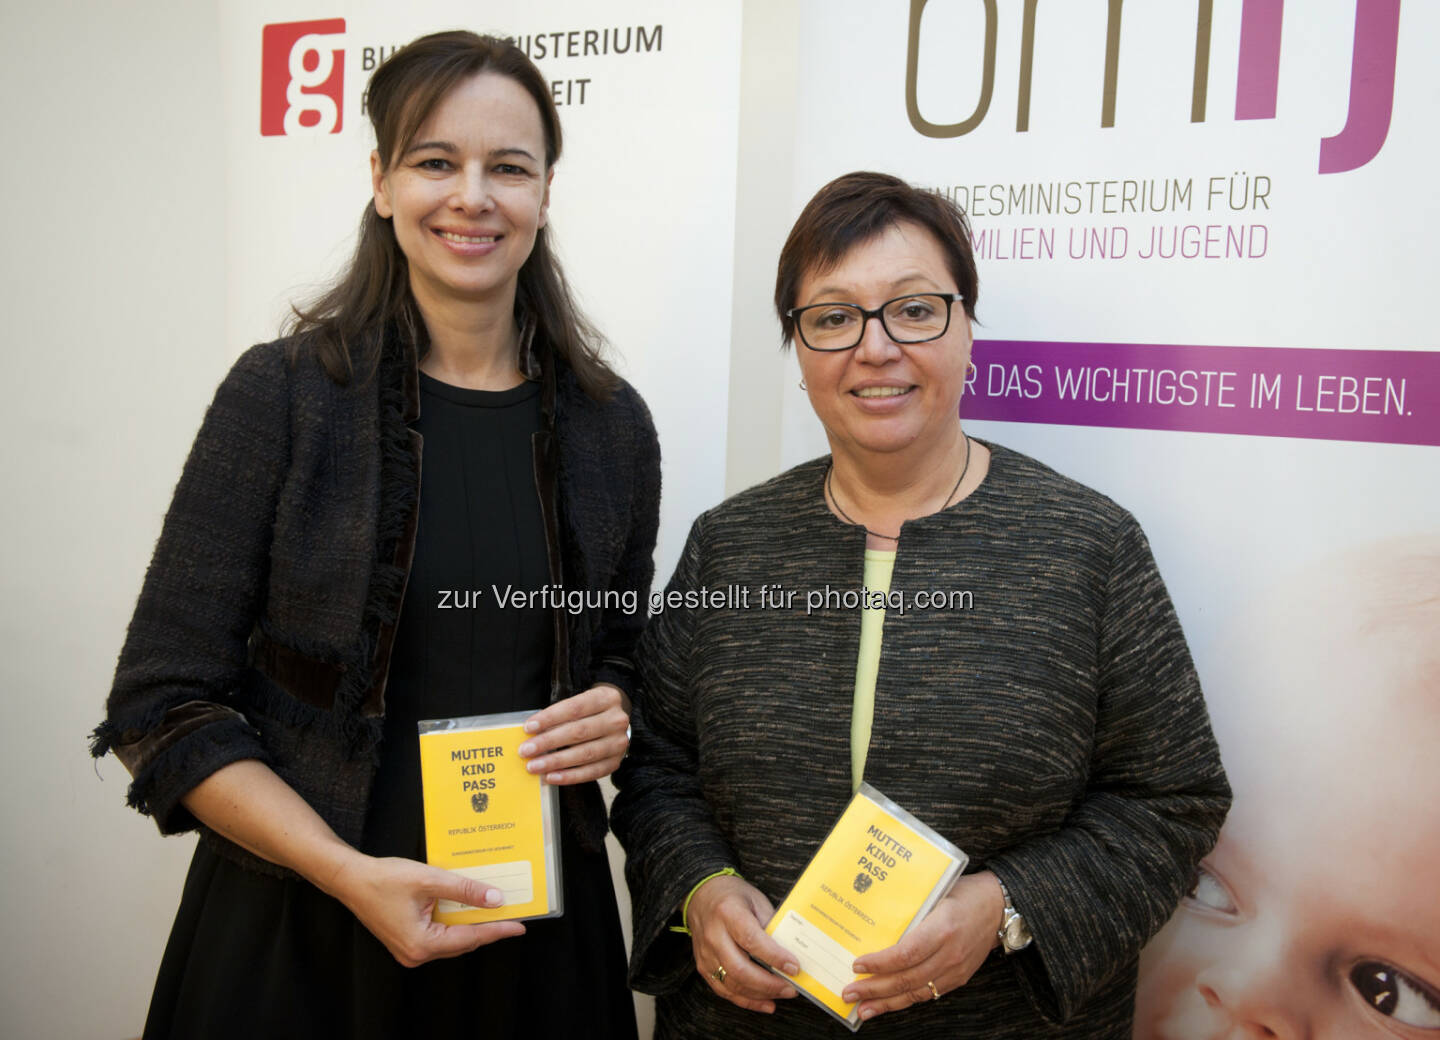 Familienministerin Sophie Karmasin Gesundheitsministerin Sabine Oberhauser: Auftakt zur Weiterentwicklung des Mutter-Kind-Passes